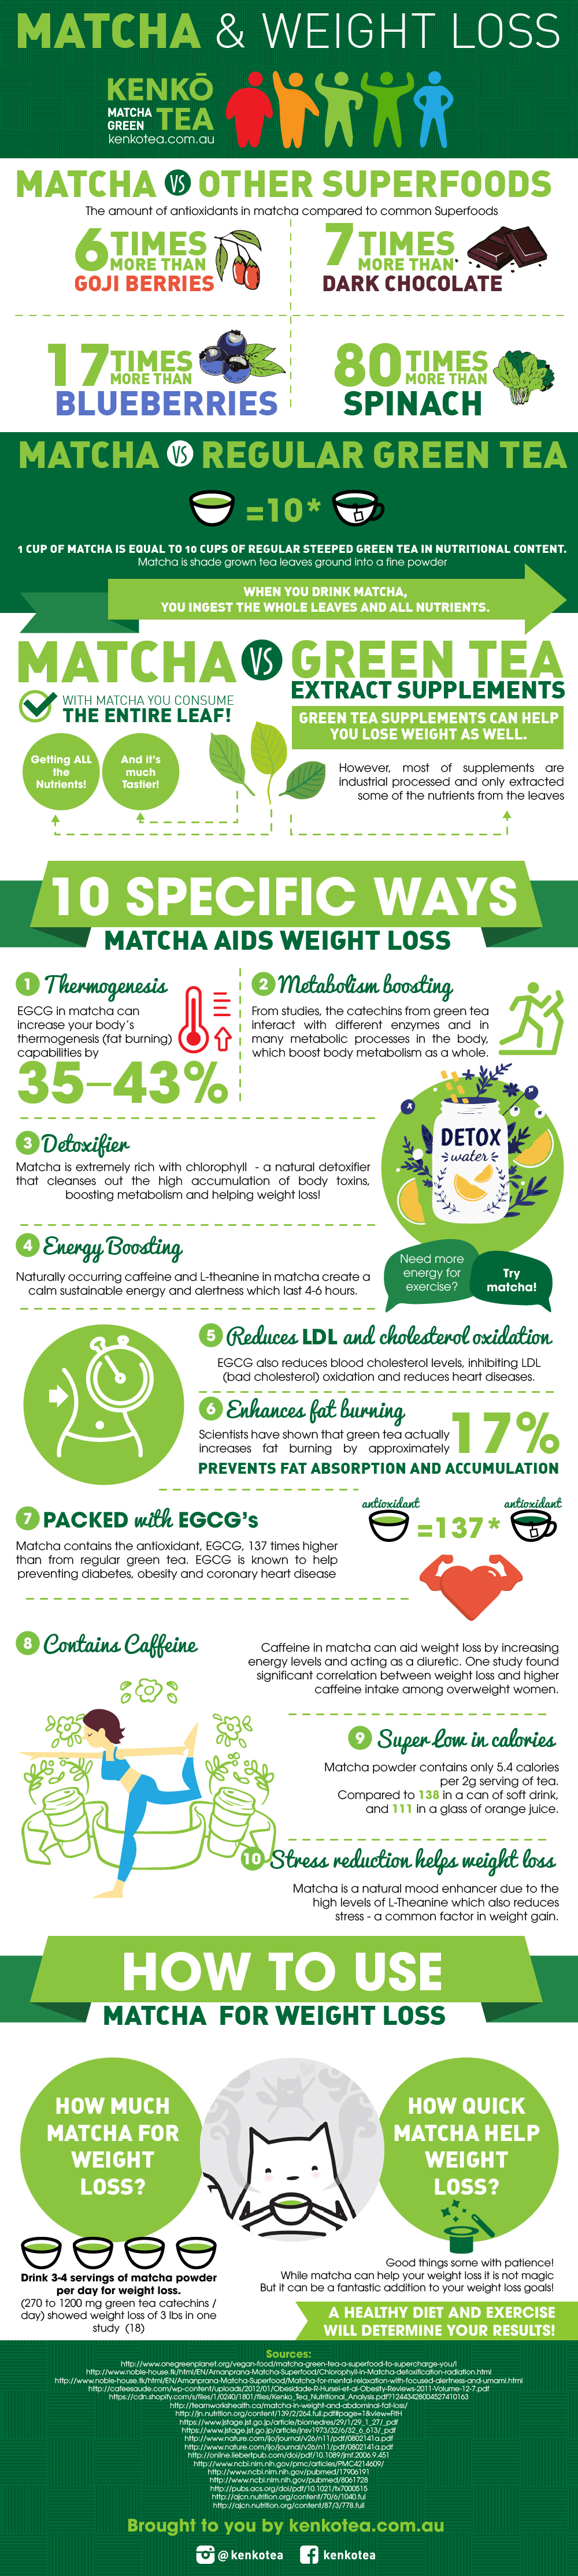 matcha green tea benefits for weight loss